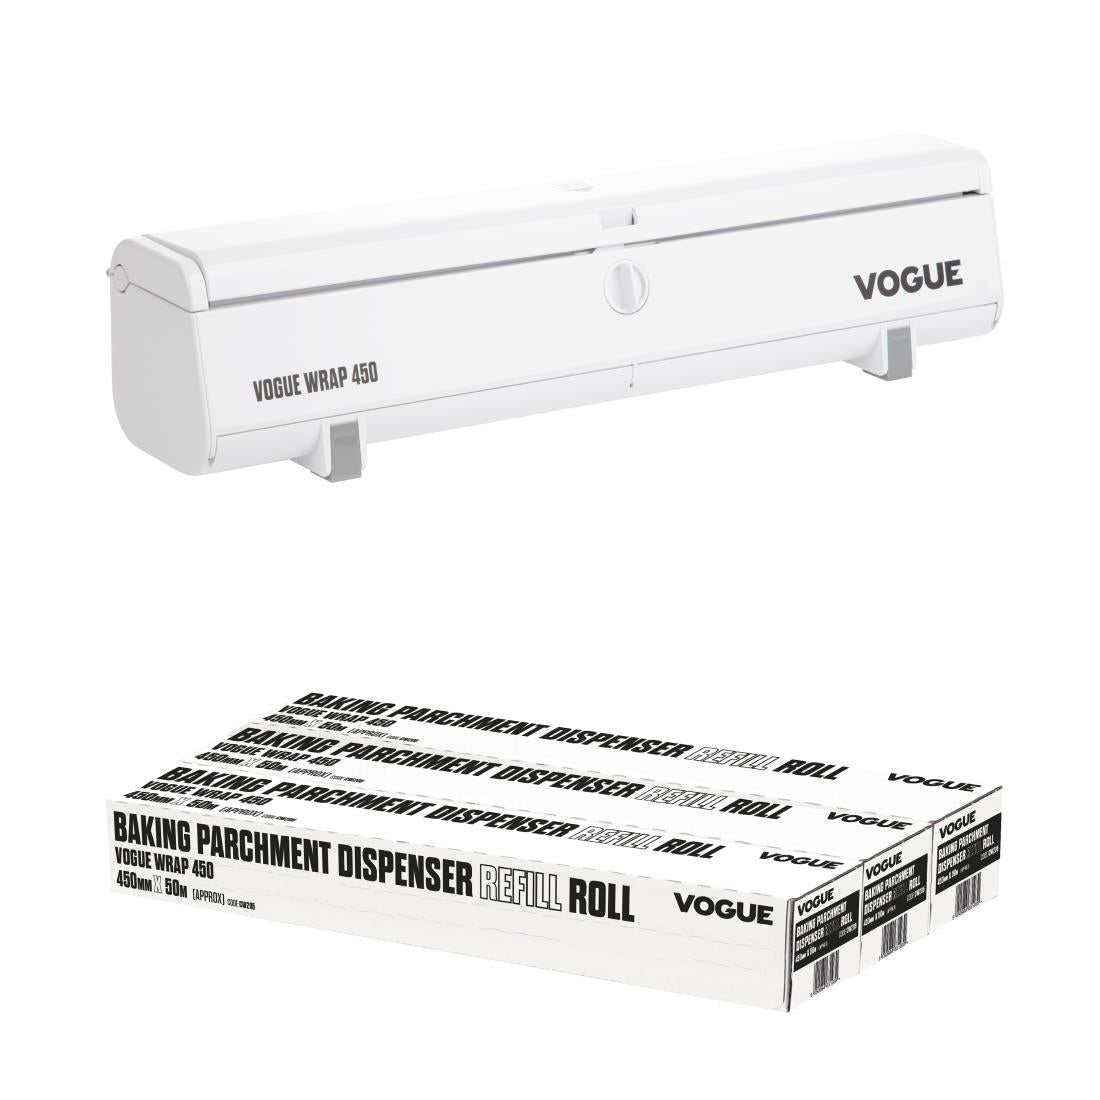 SA779 Vogue Wrap 450 Parchment Dispenser Bundle